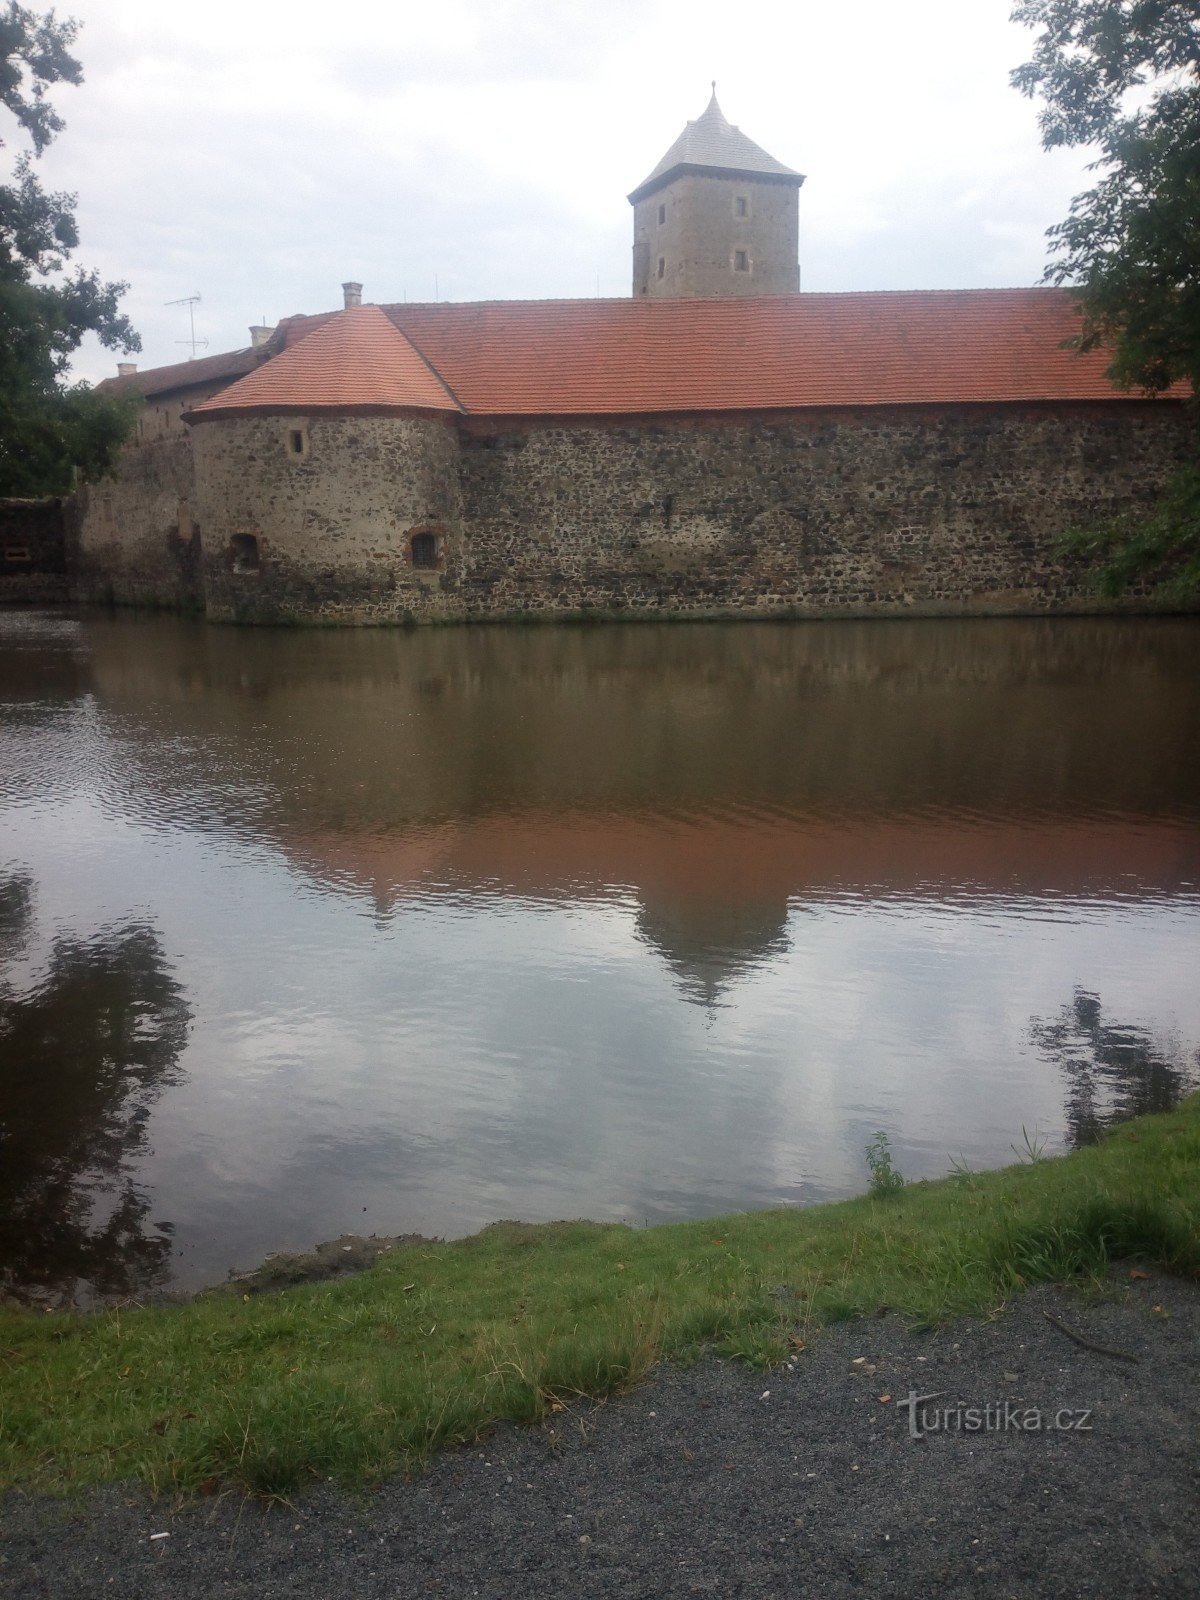 Castelul de apă Švihov